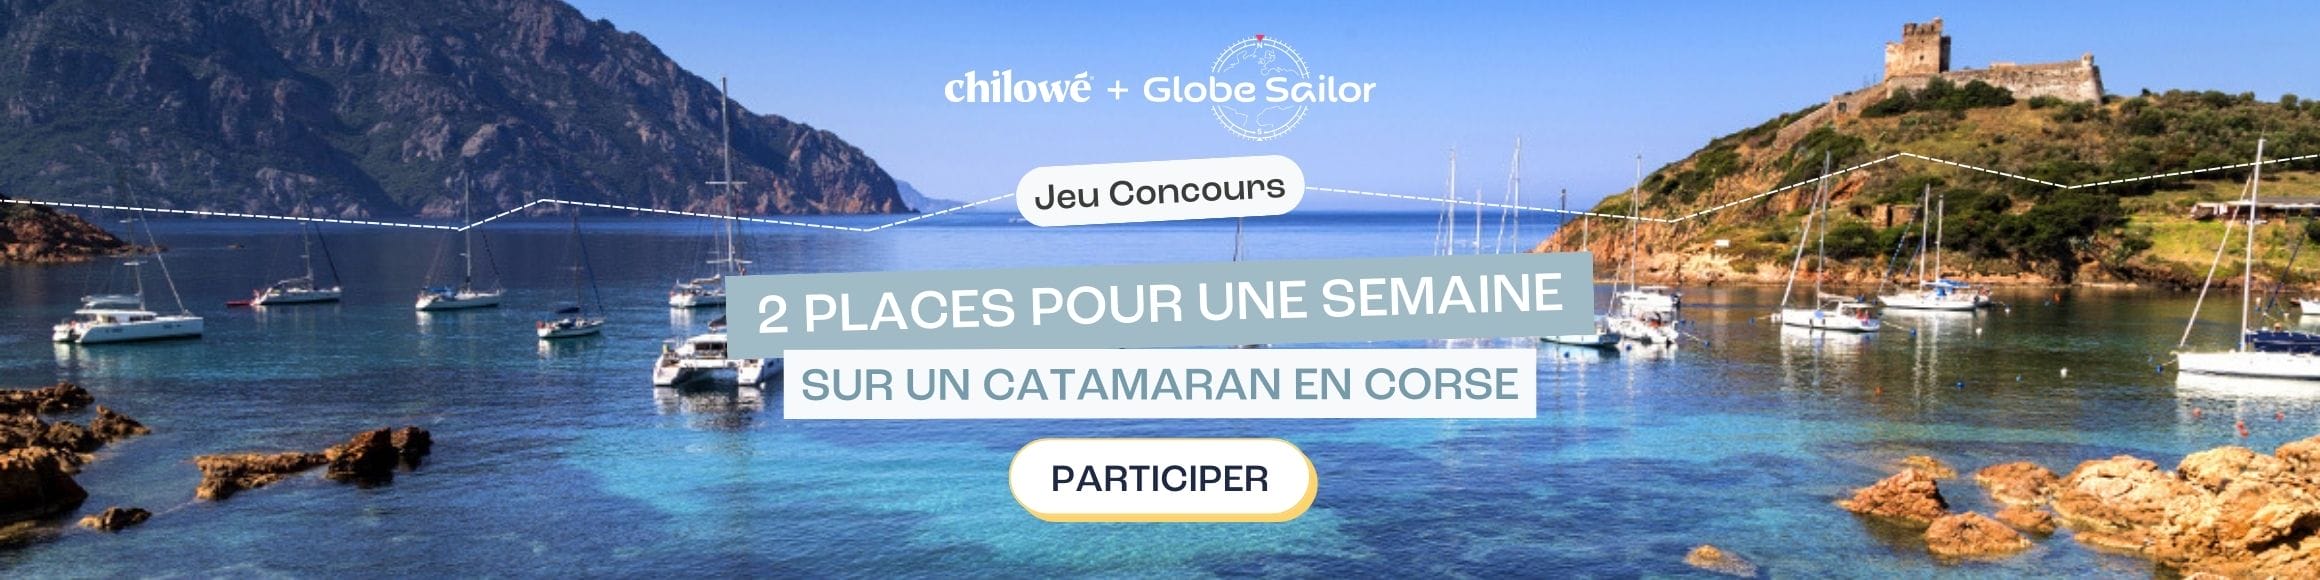 Concours Globesailor, Gagnez une semaine en catamaran pour 2 en Corse, d\'une valeur de 3440€